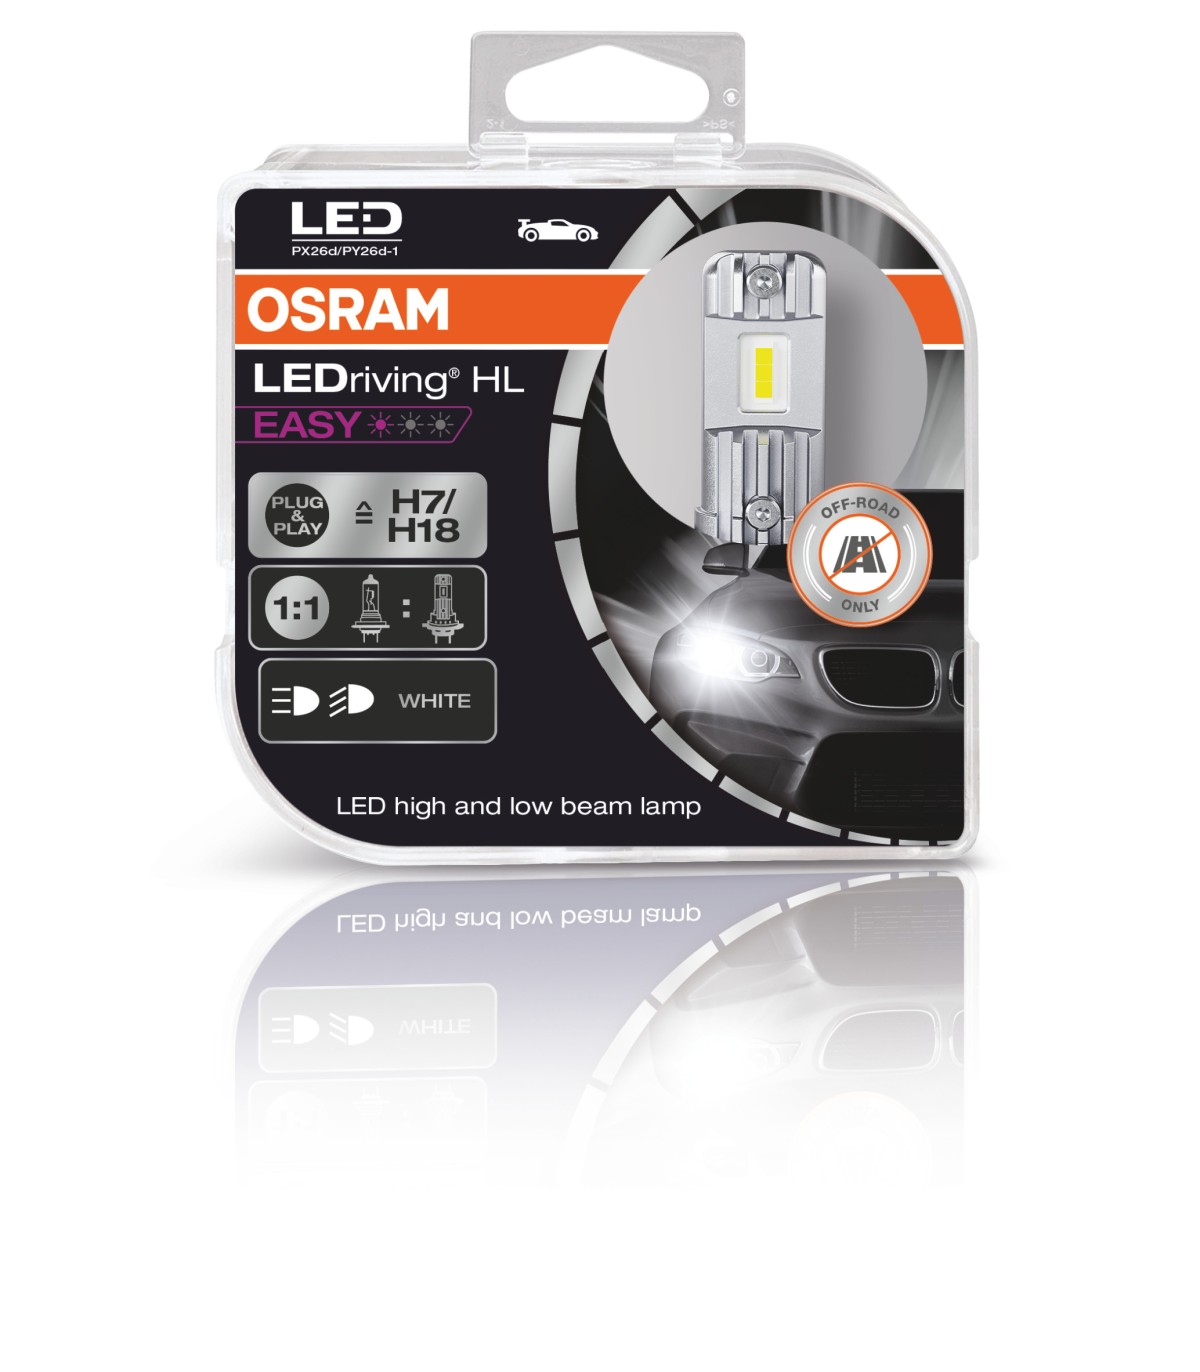 H7/H18 LED OSRAM LEDriving HL EASY